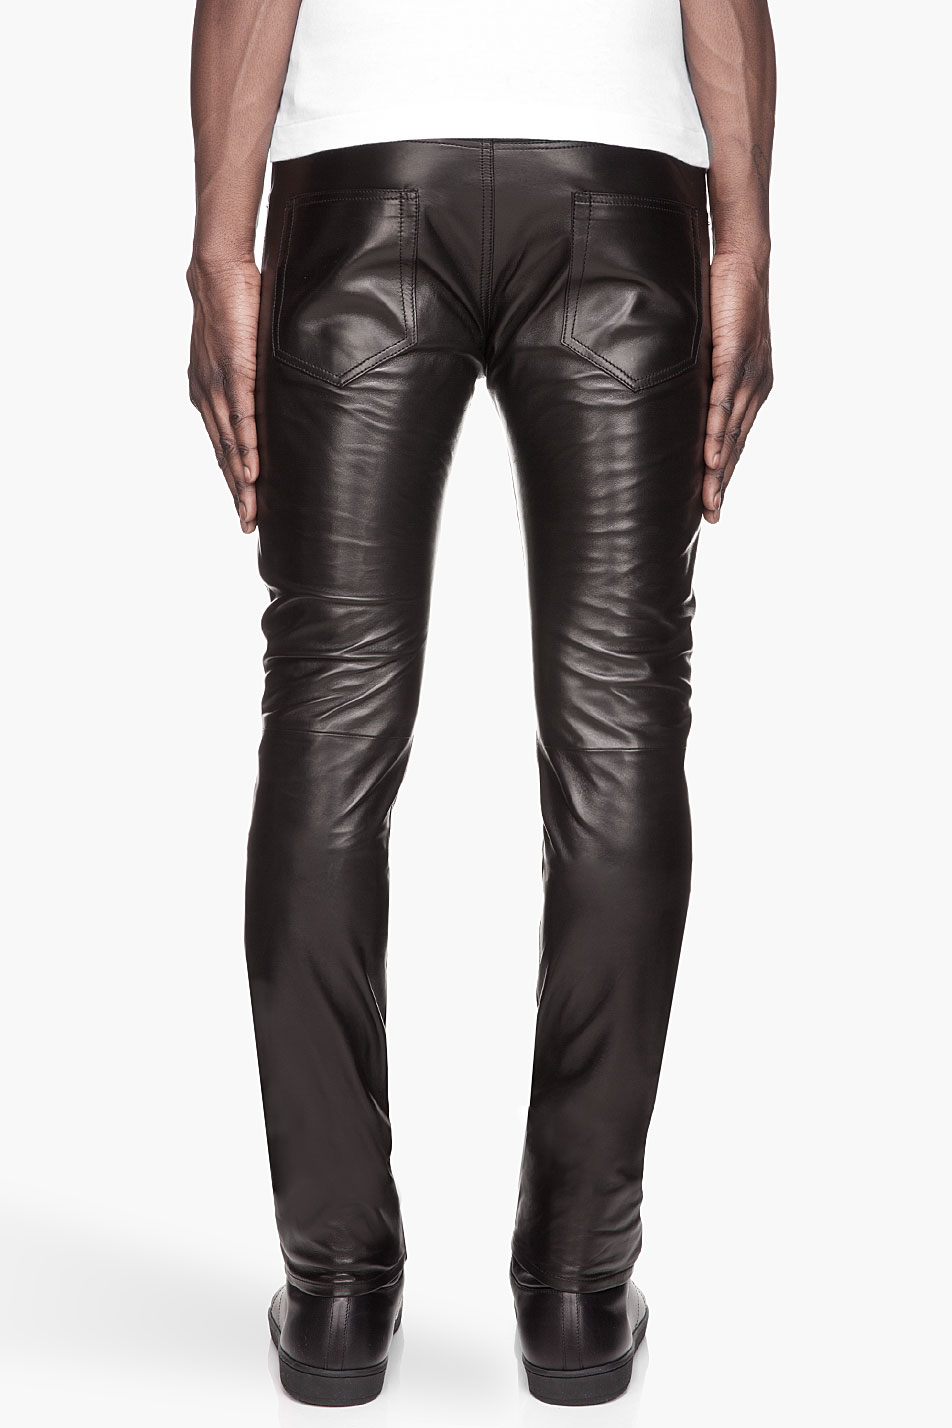 Saint Laurent Black Buffed Leather Pants for Men - Lyst